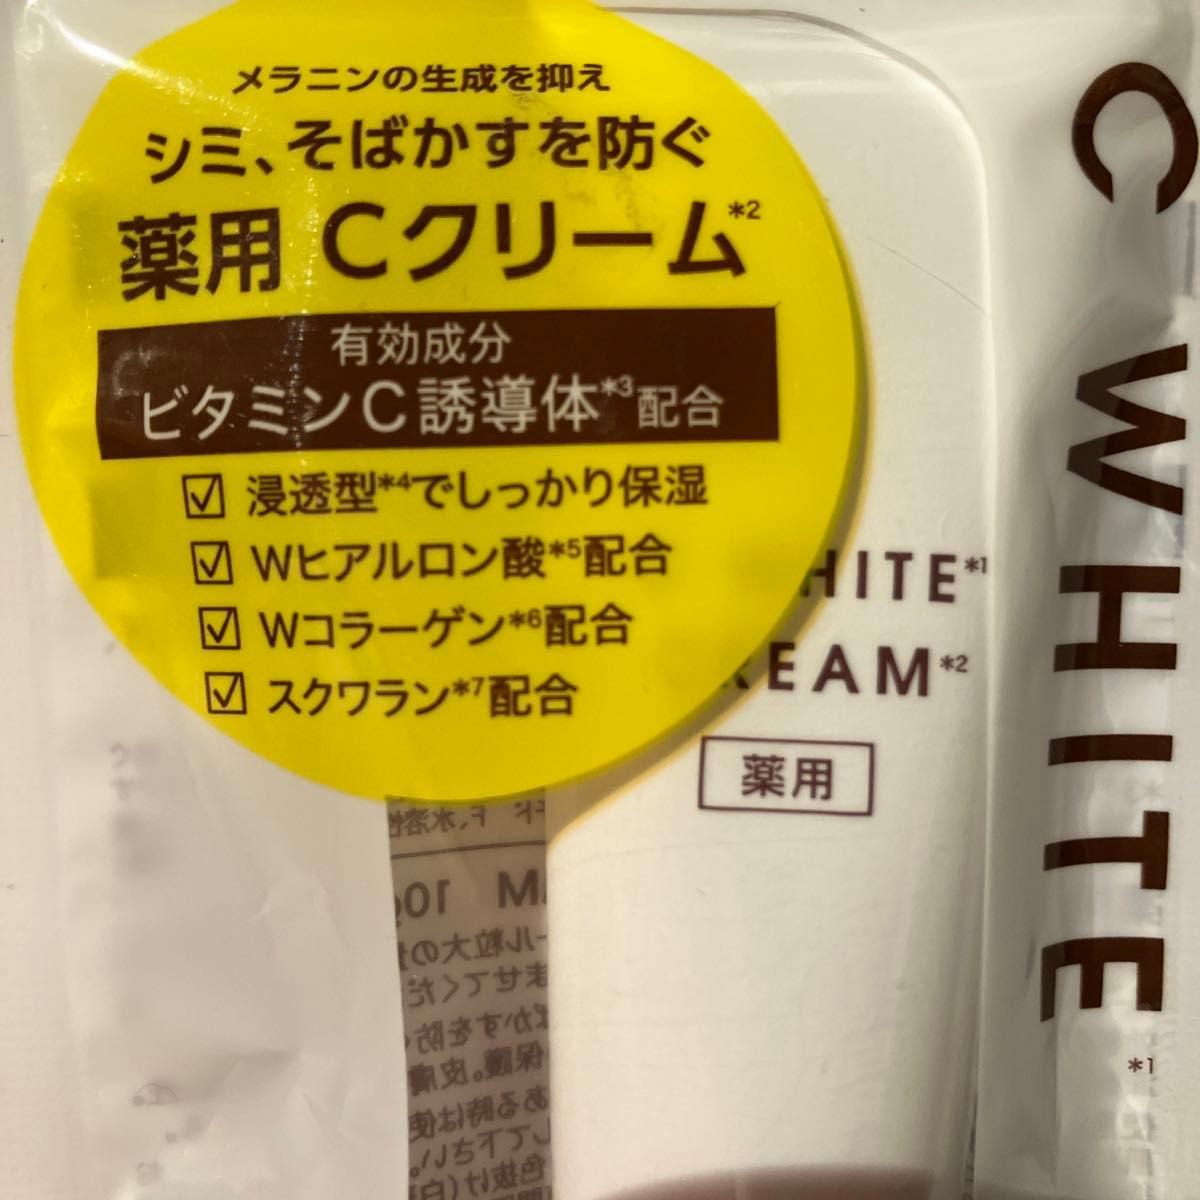 新品未開封 Kirei&co.キレイアンドコー Ｃホワイトクリーム10g ★クーポン使用で200円引きになります★